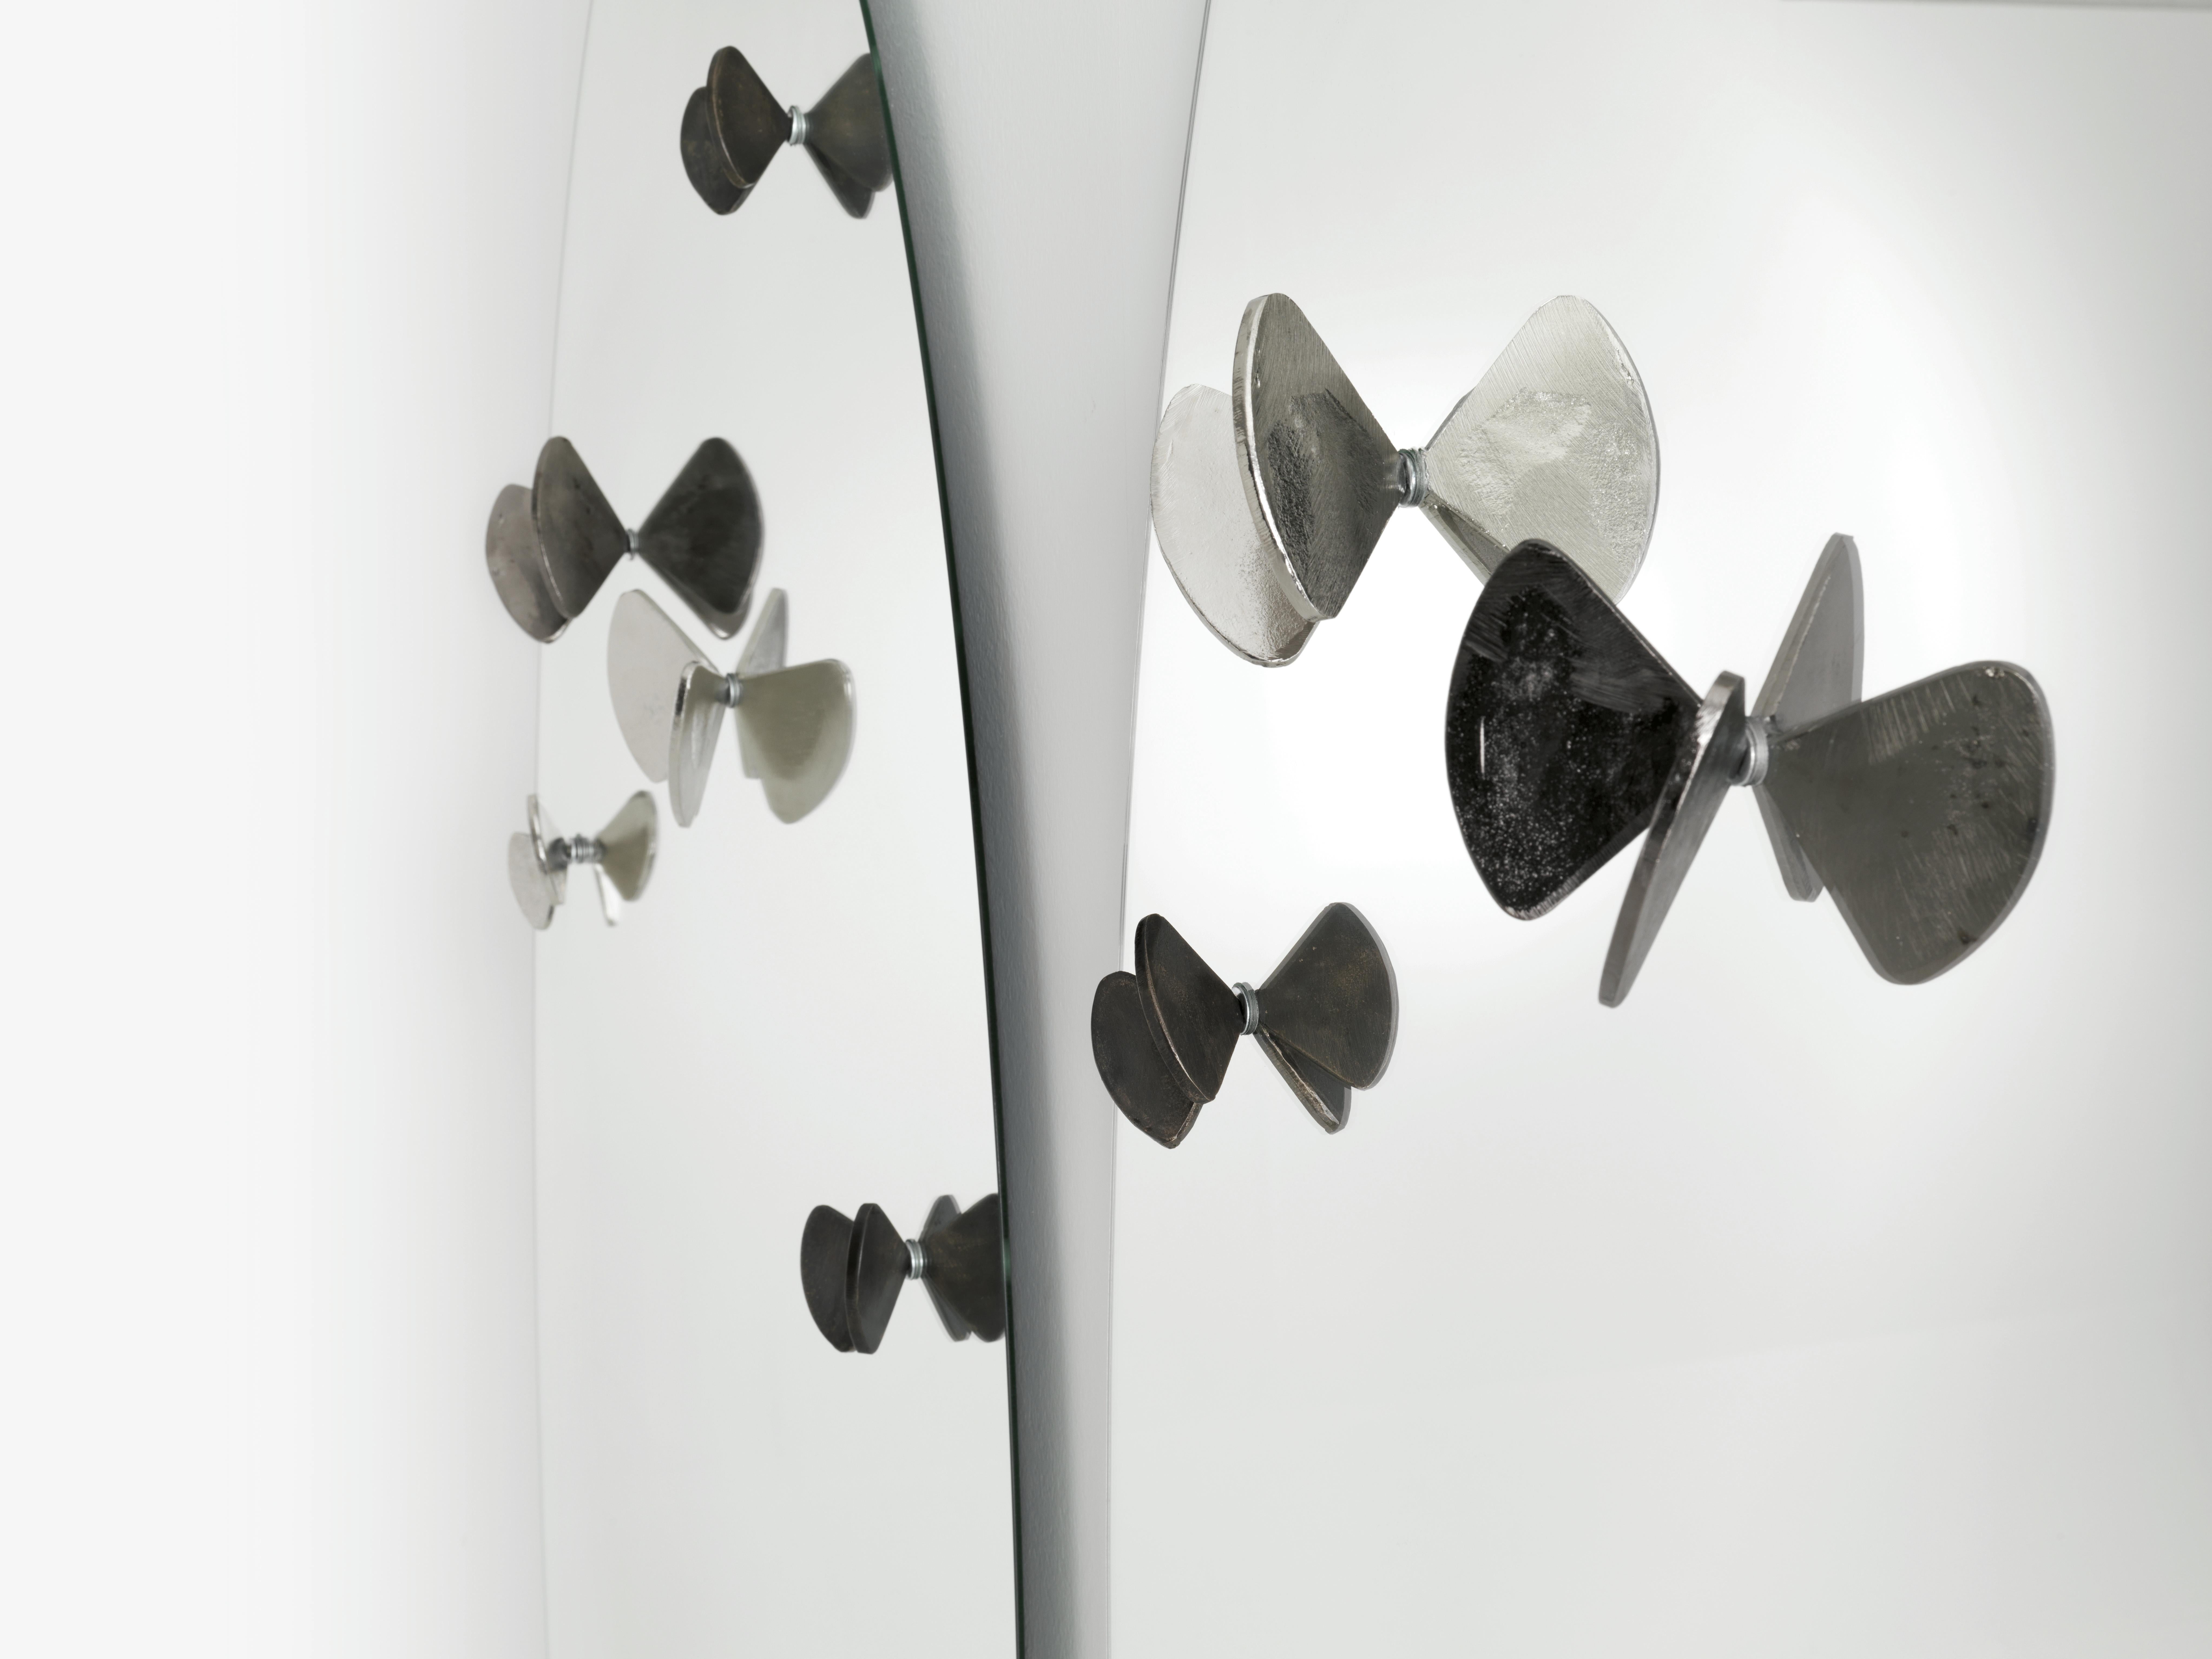 Bice Spiegel mit Schmetterlingen aus Messingguss entworfen von Roberto Mora für die Marke Mogg.  Zusätzliche Schmetterlinge können auch in zwei verschiedenen Größen erworben werden. Die Schmetterlinge sind in den Ausführungen Kupfer oder Nickel